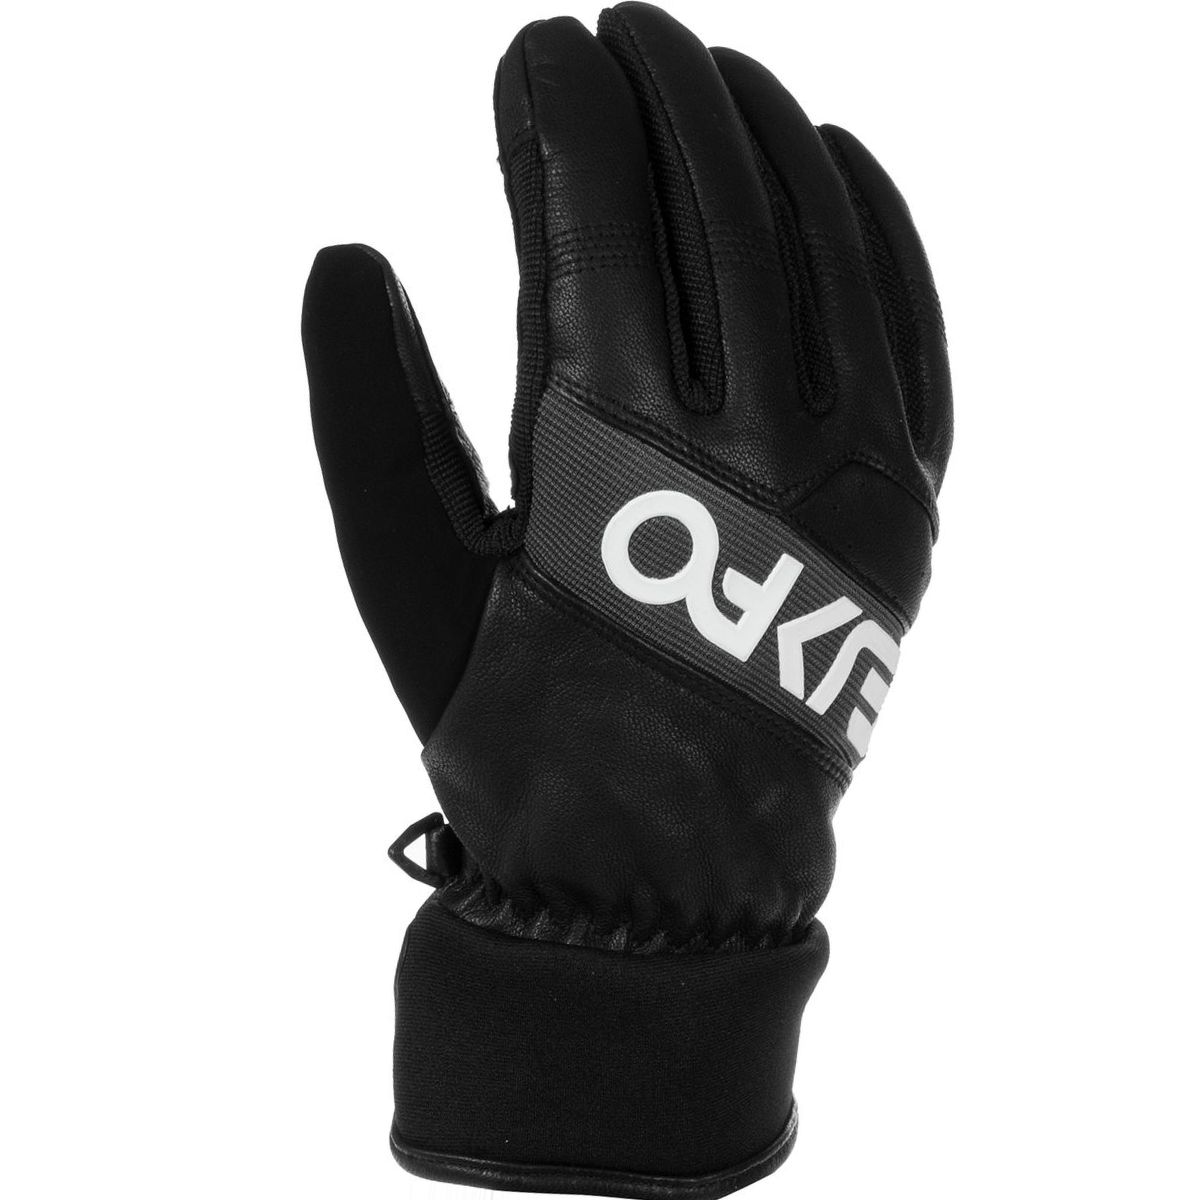 Oakley Factory Winter 2 Glove - Men's